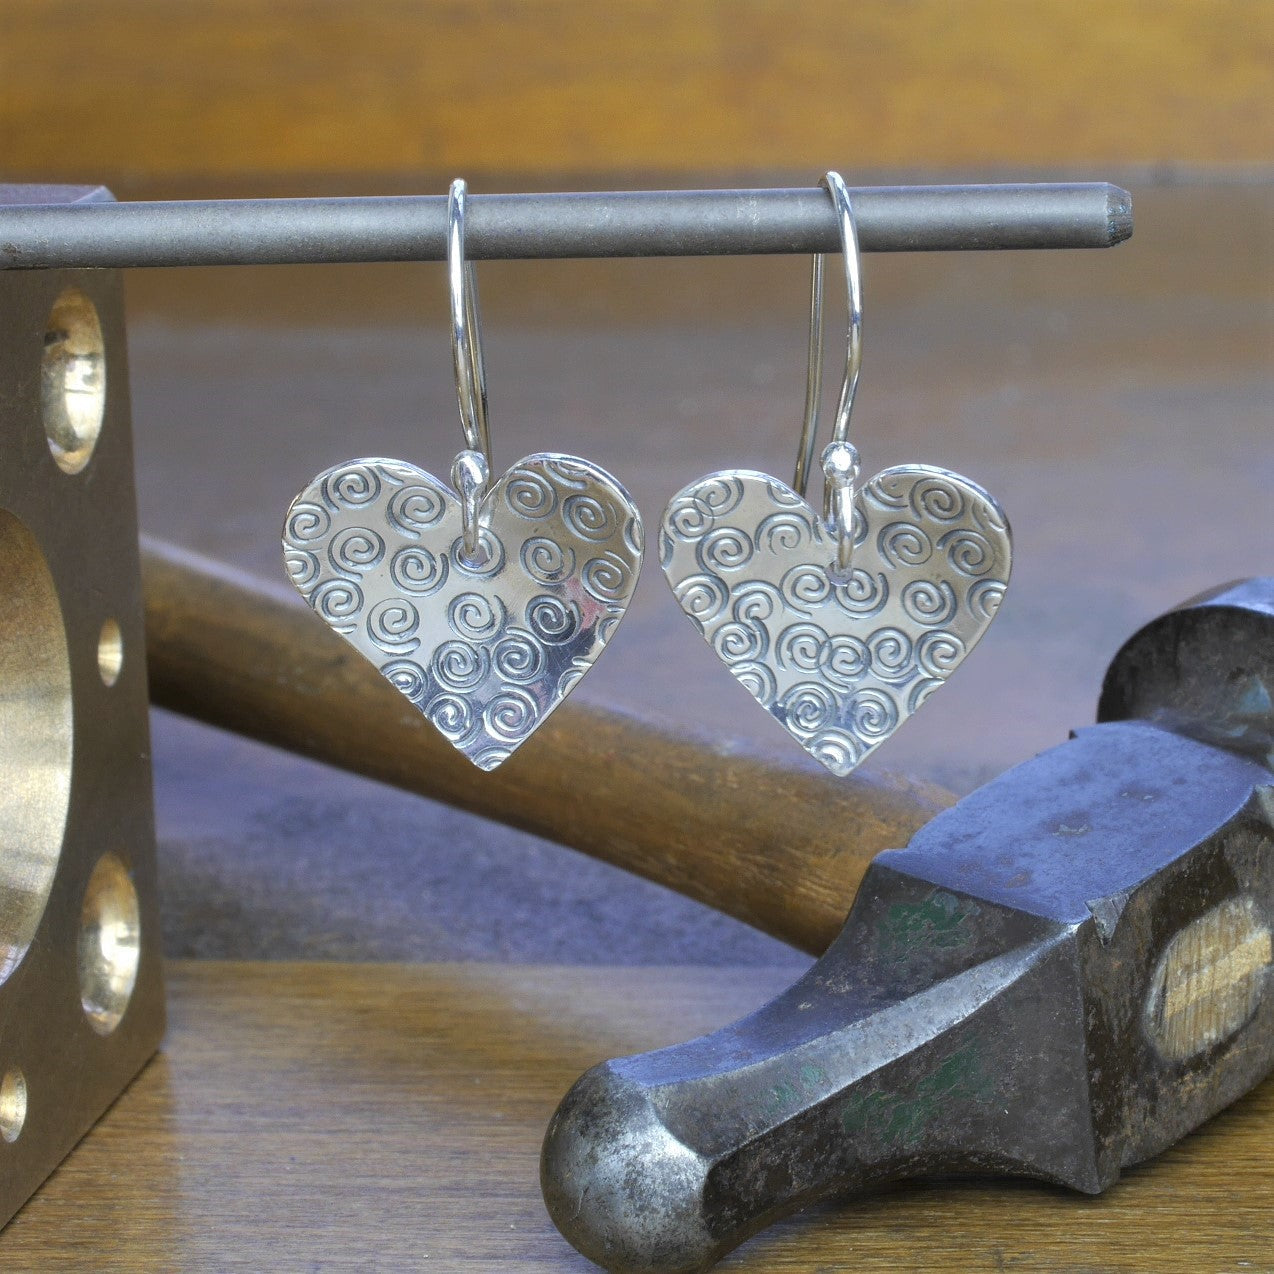 Making textured silver drop earrings jewellery workshop Derbyshire